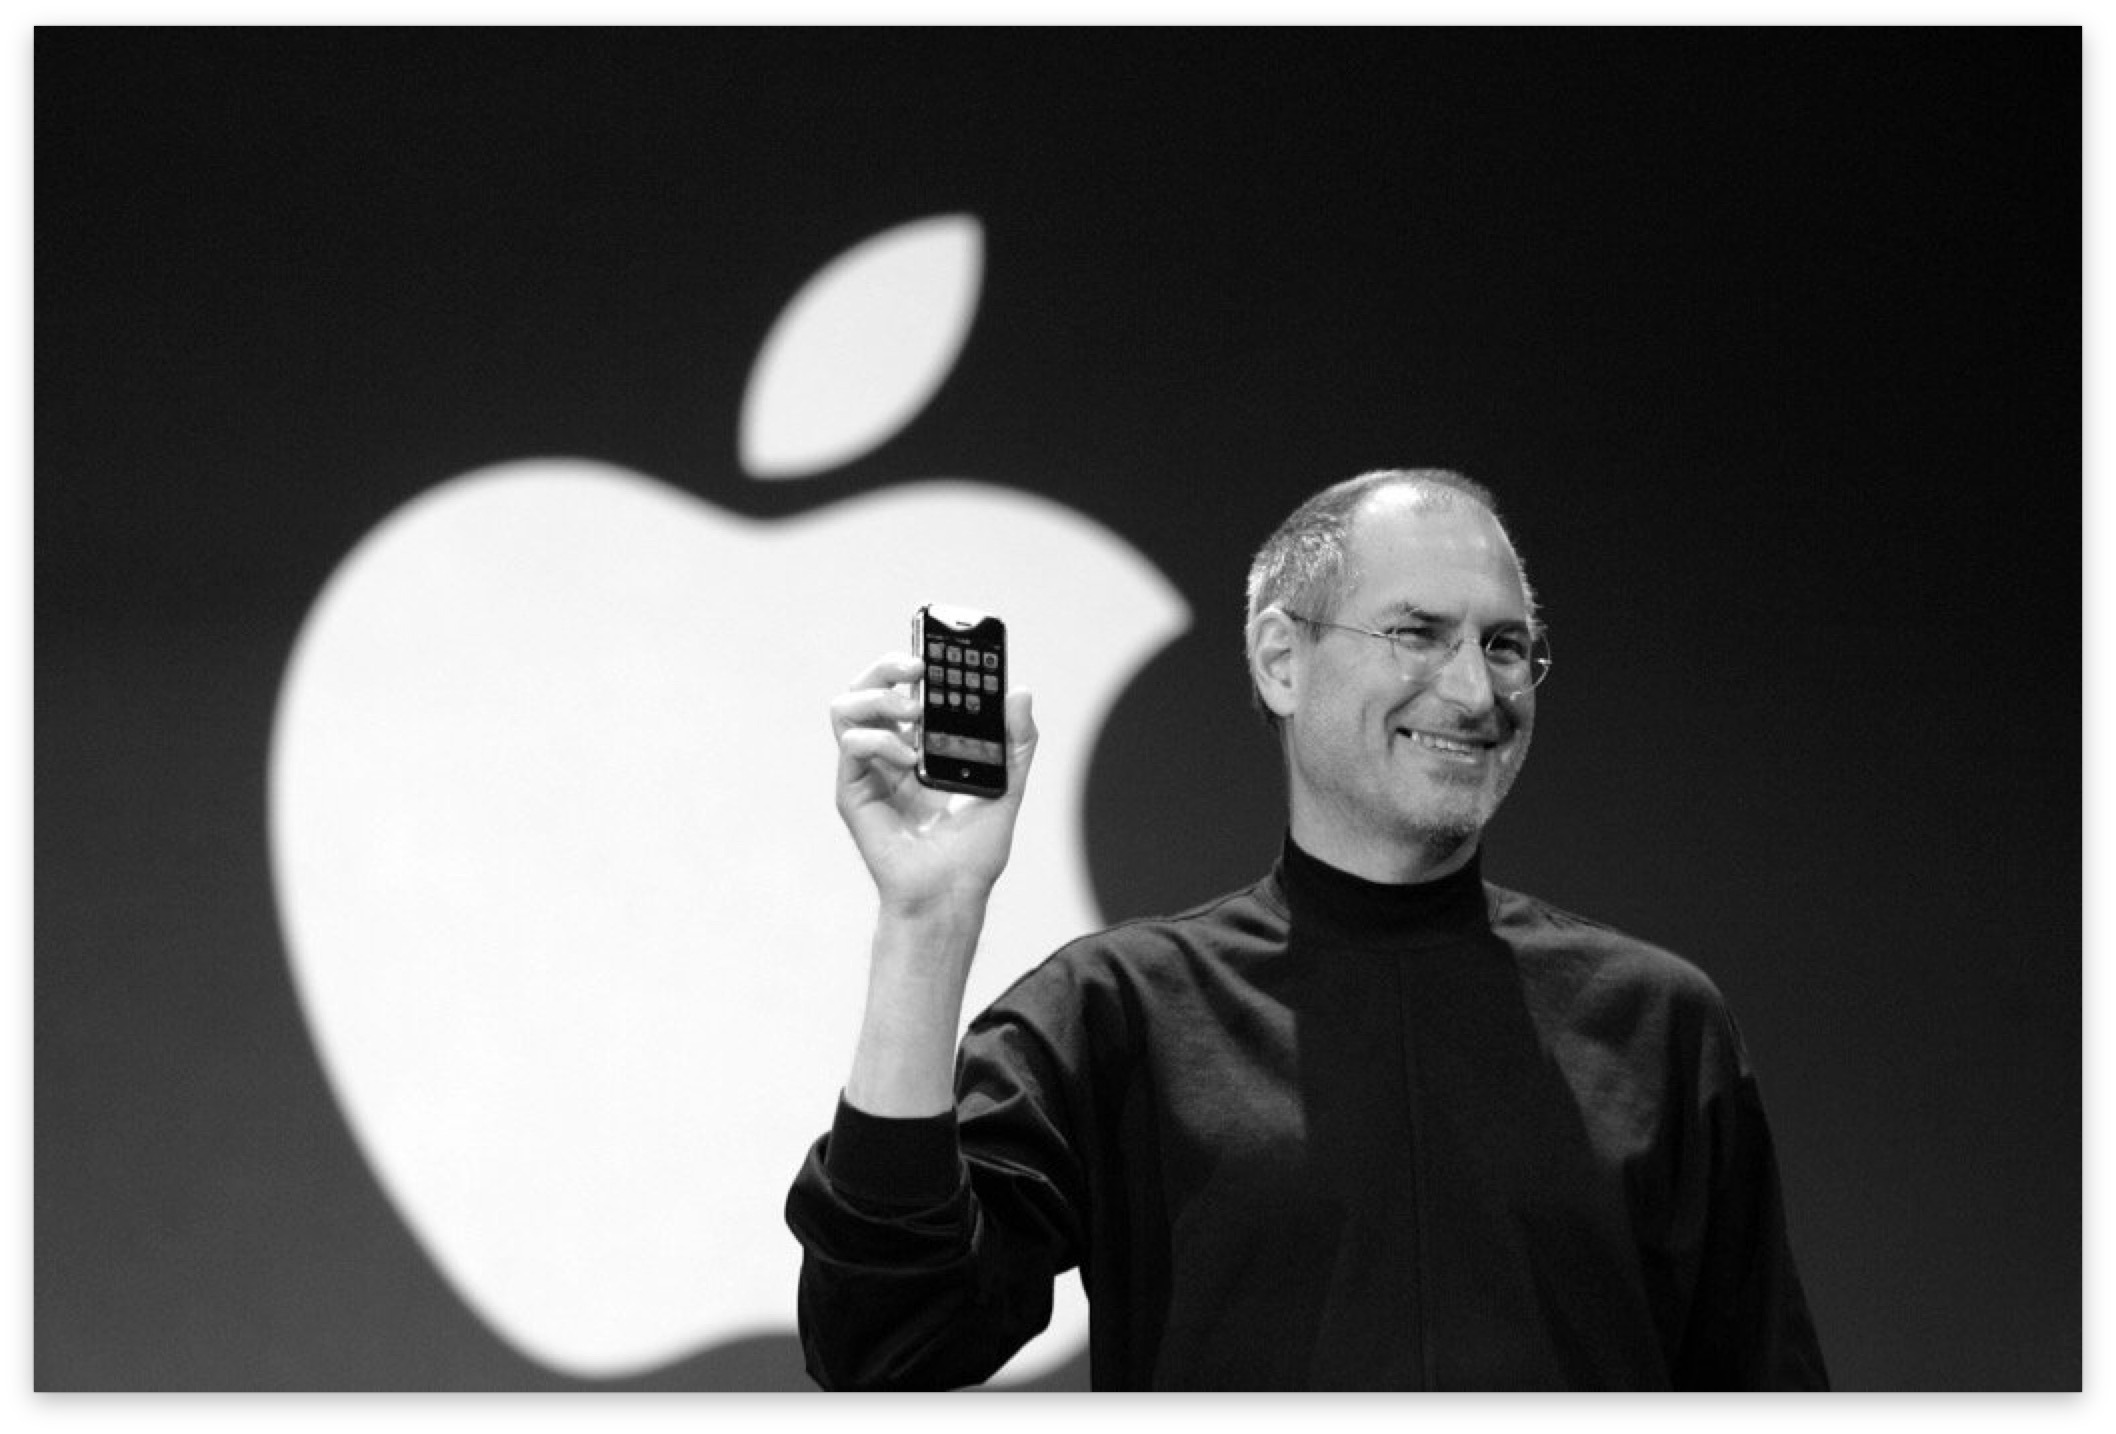 15 anni dal primo iPhone, il prodotto che ha cambiato un’epoca